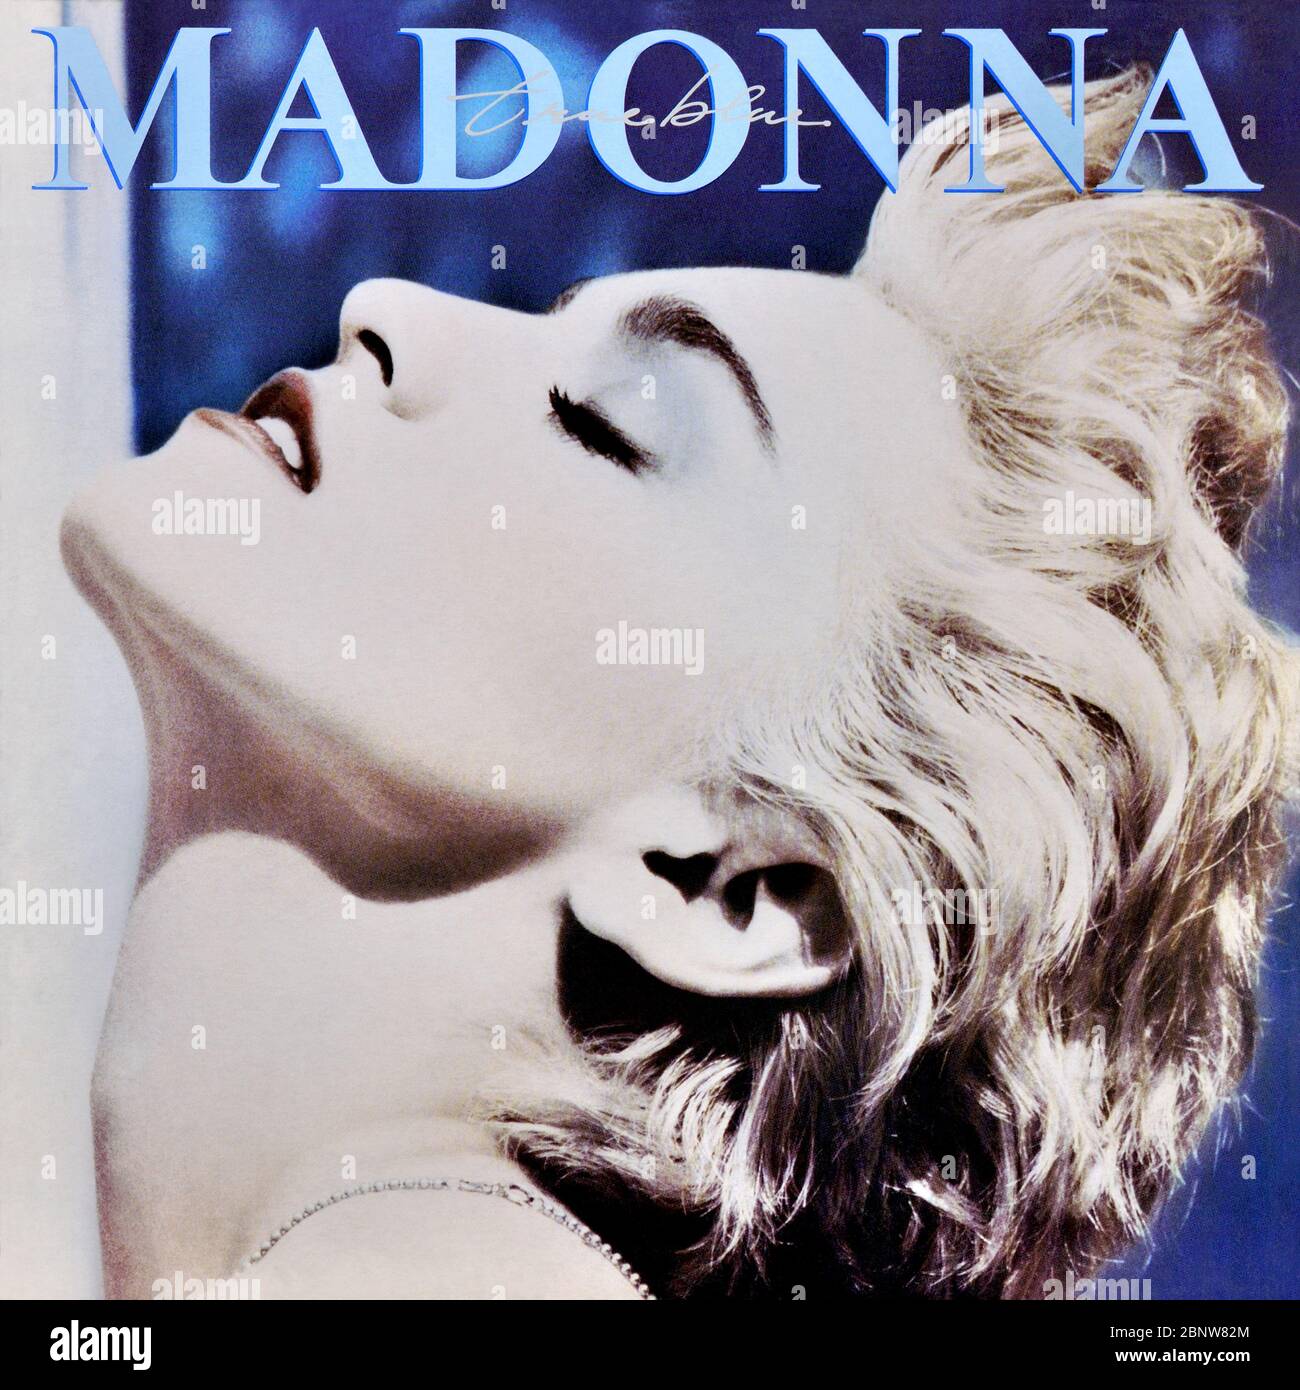 Madonna - original Vinyl Album Cover - True Blue - 1986 Stockfoto